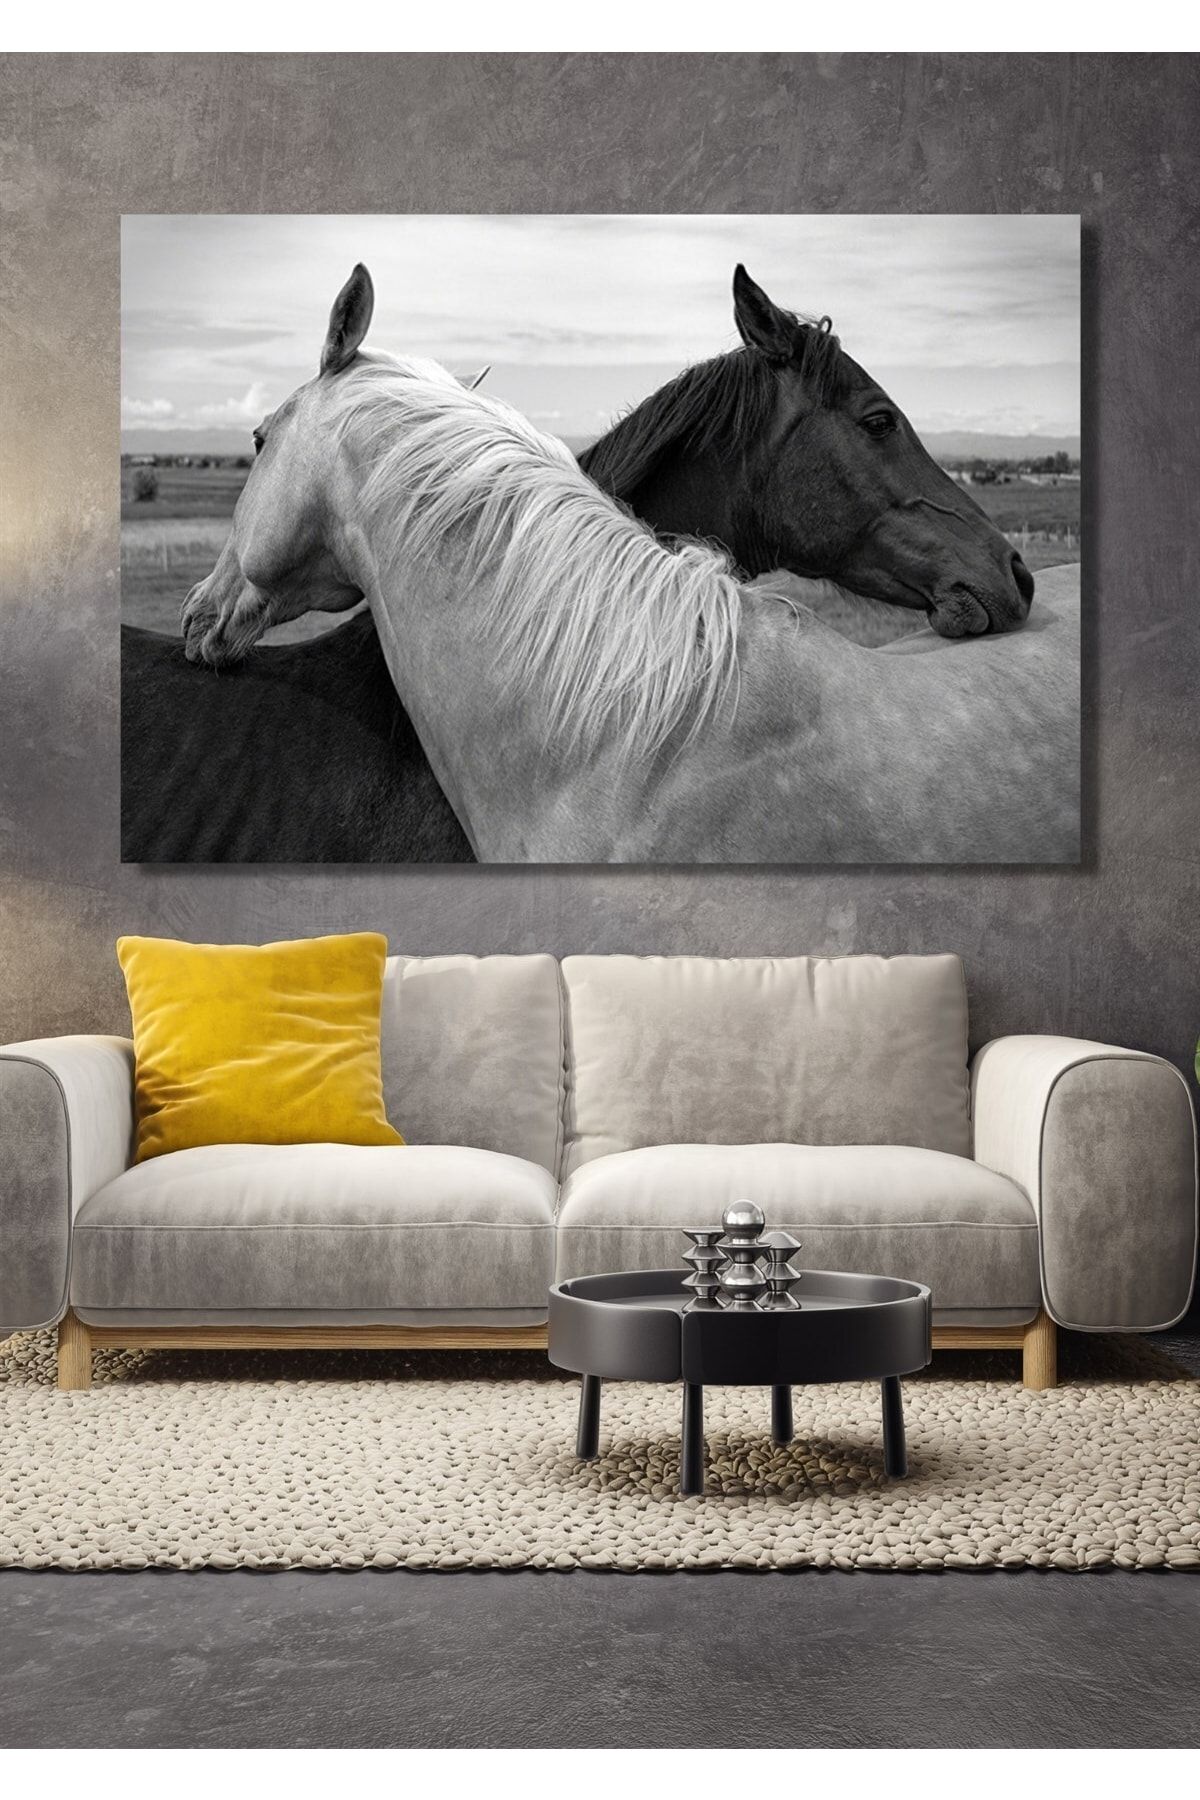 NT Handmade Siyah Beyaz Atlar 70x100cm Kanvas Tablo Salon Oturma Yatak Odası Ofis Cafe Antre Için Duvar Dekoru